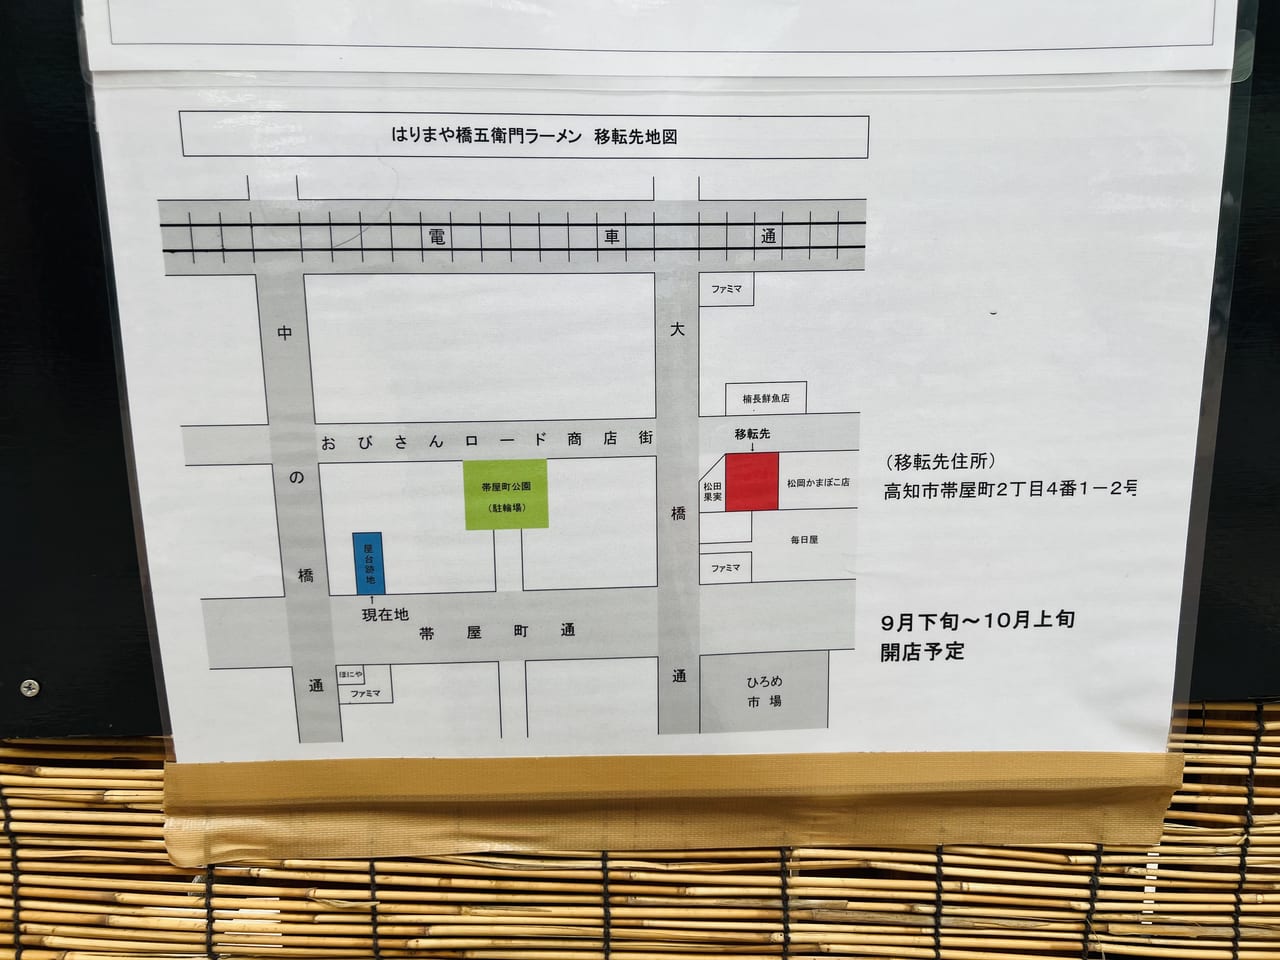 「はりまや橋 五衛門ラーメン」移転オープン予定の場所を示した地図